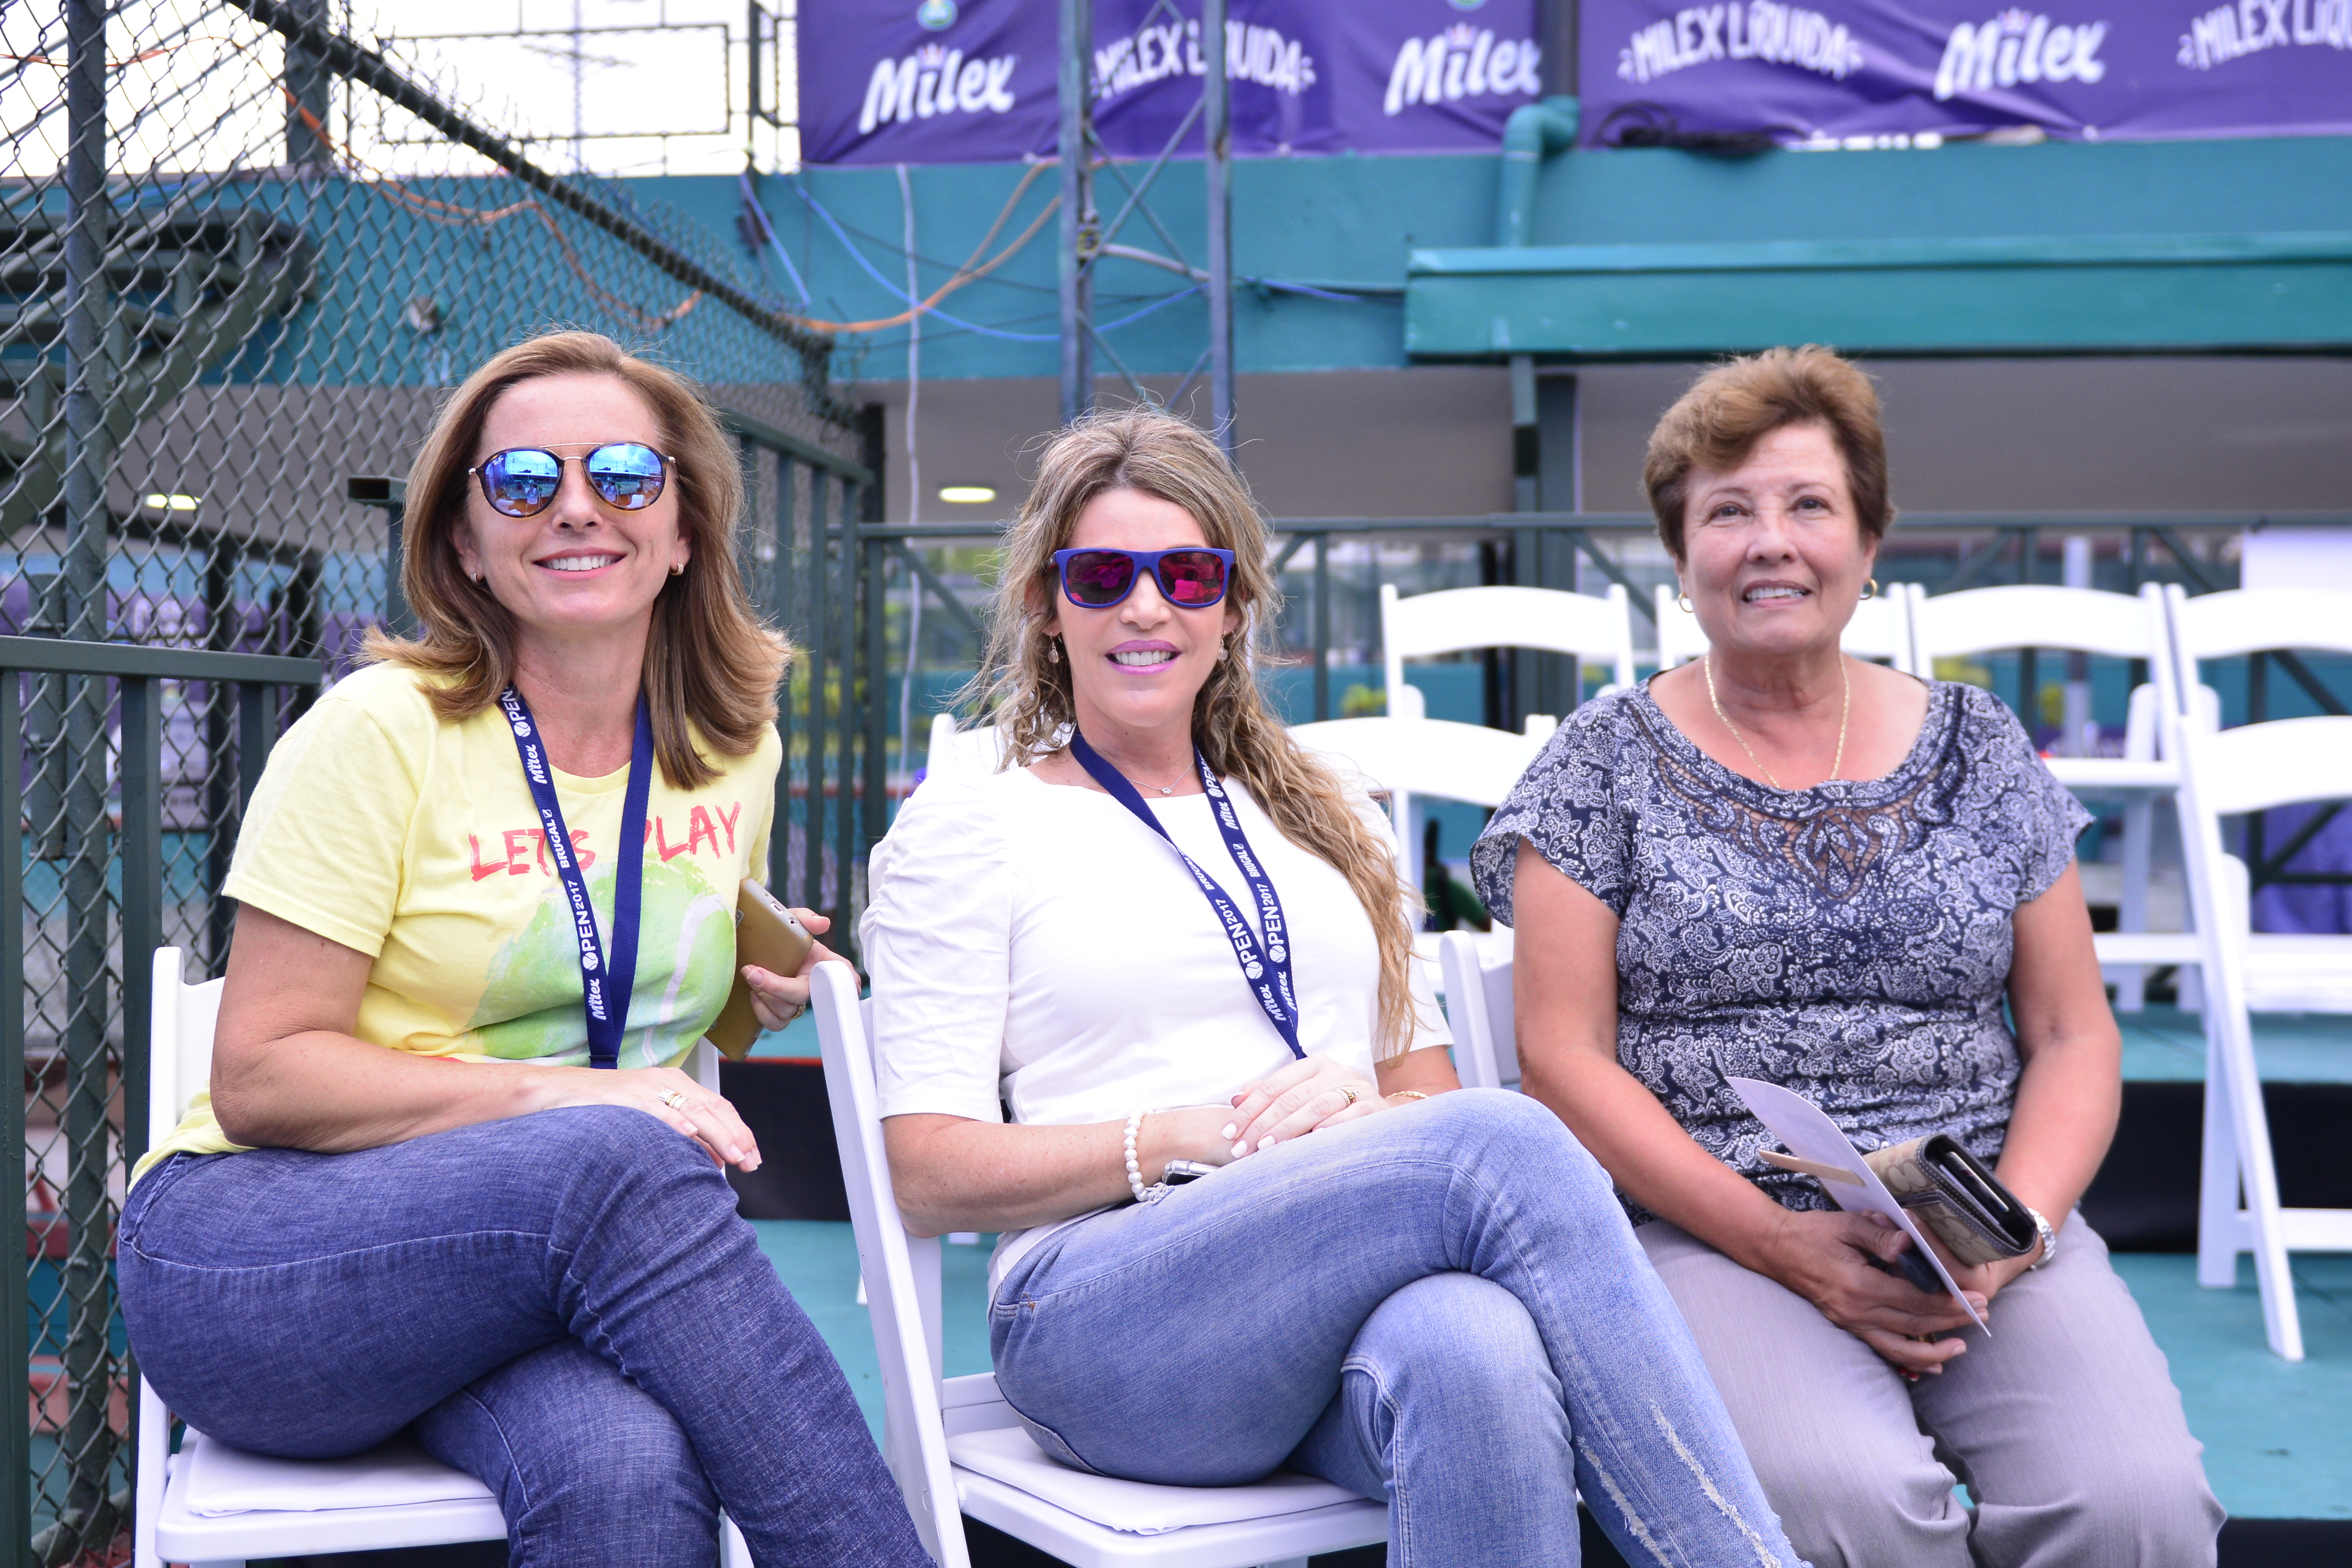  Milex Open 2017 clausura dando ejemplo de tenis de clase mundial